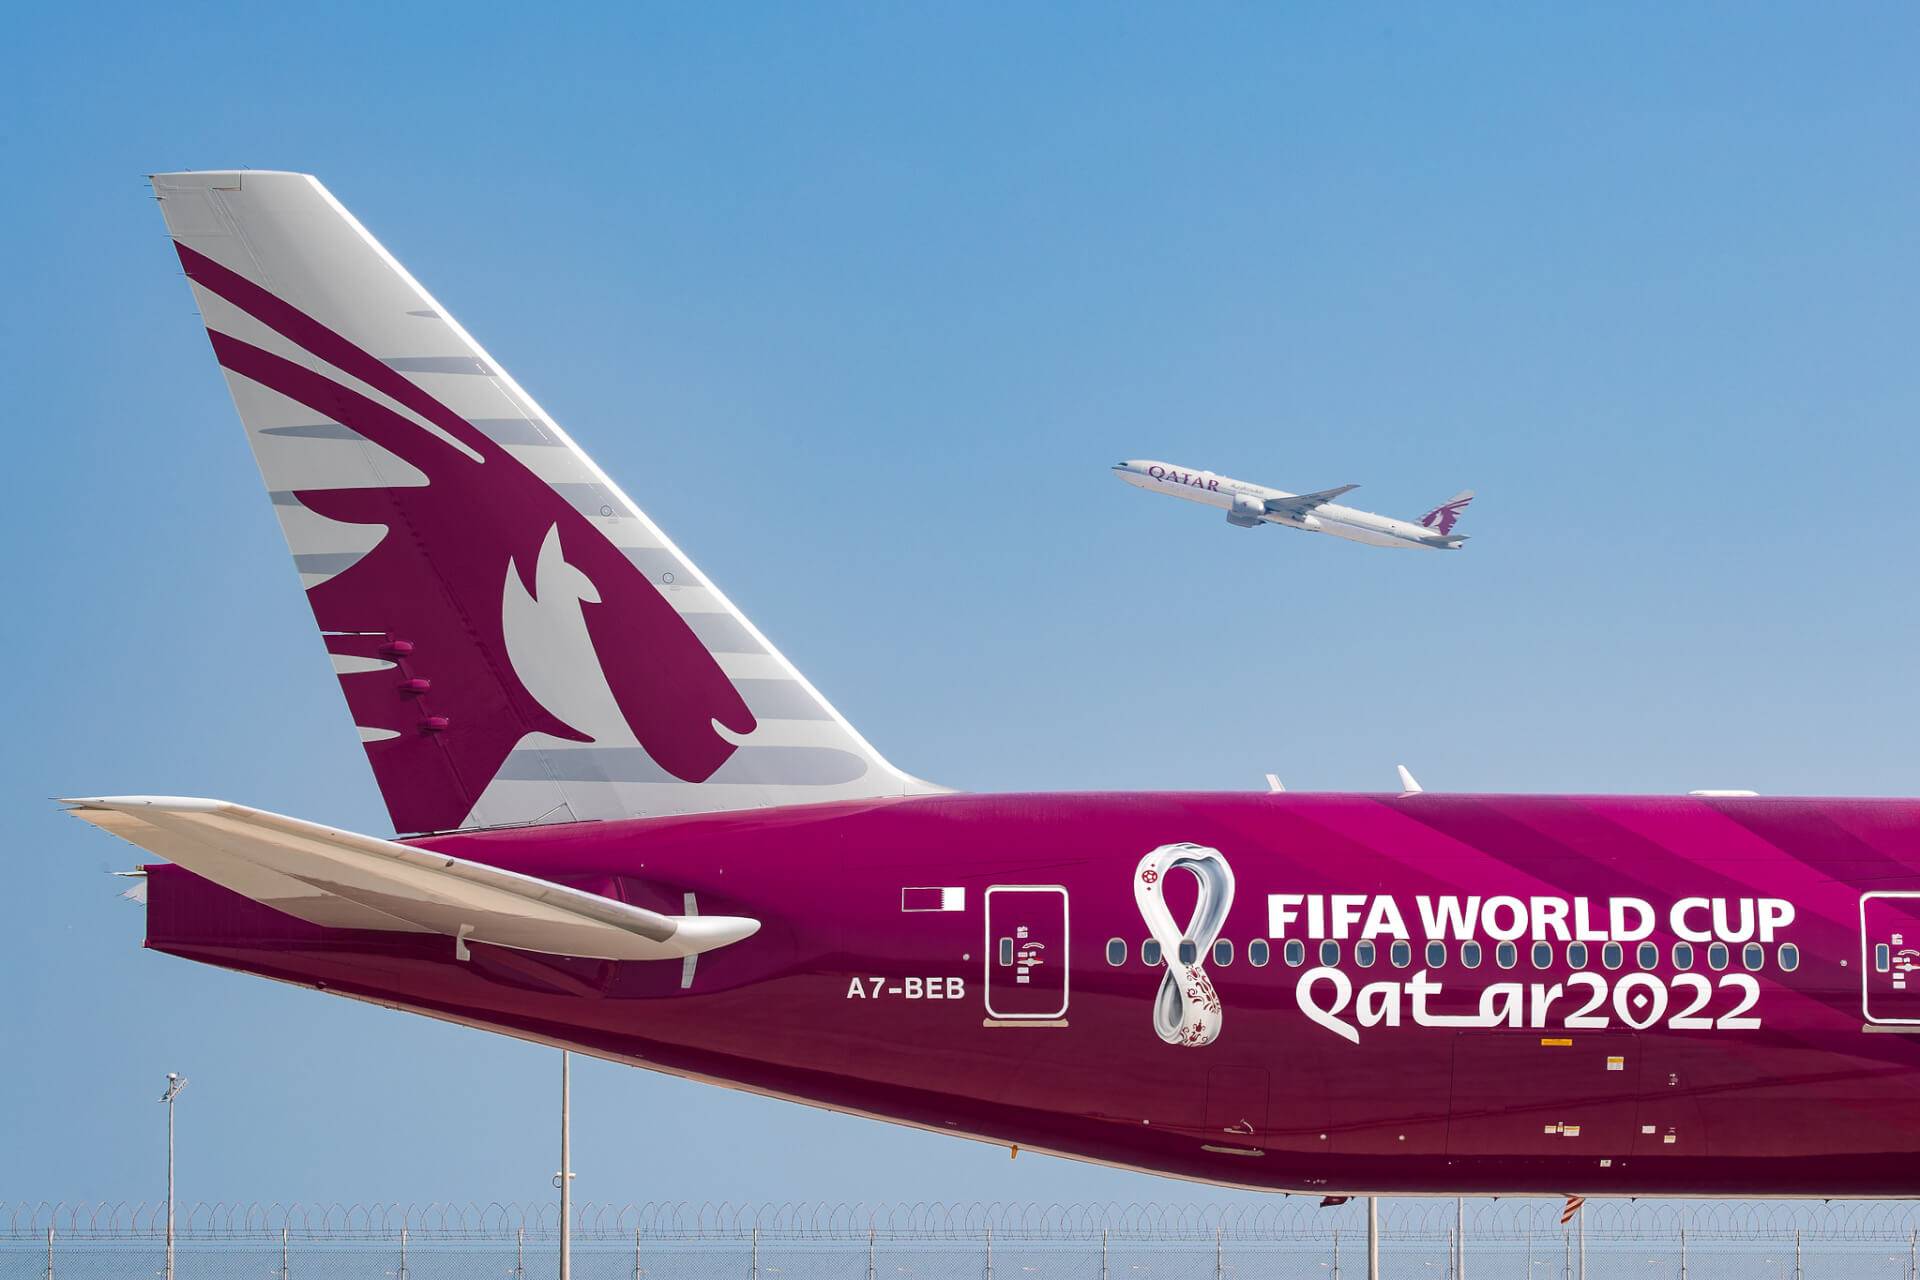 Катарские авиалинии — официальный сайт